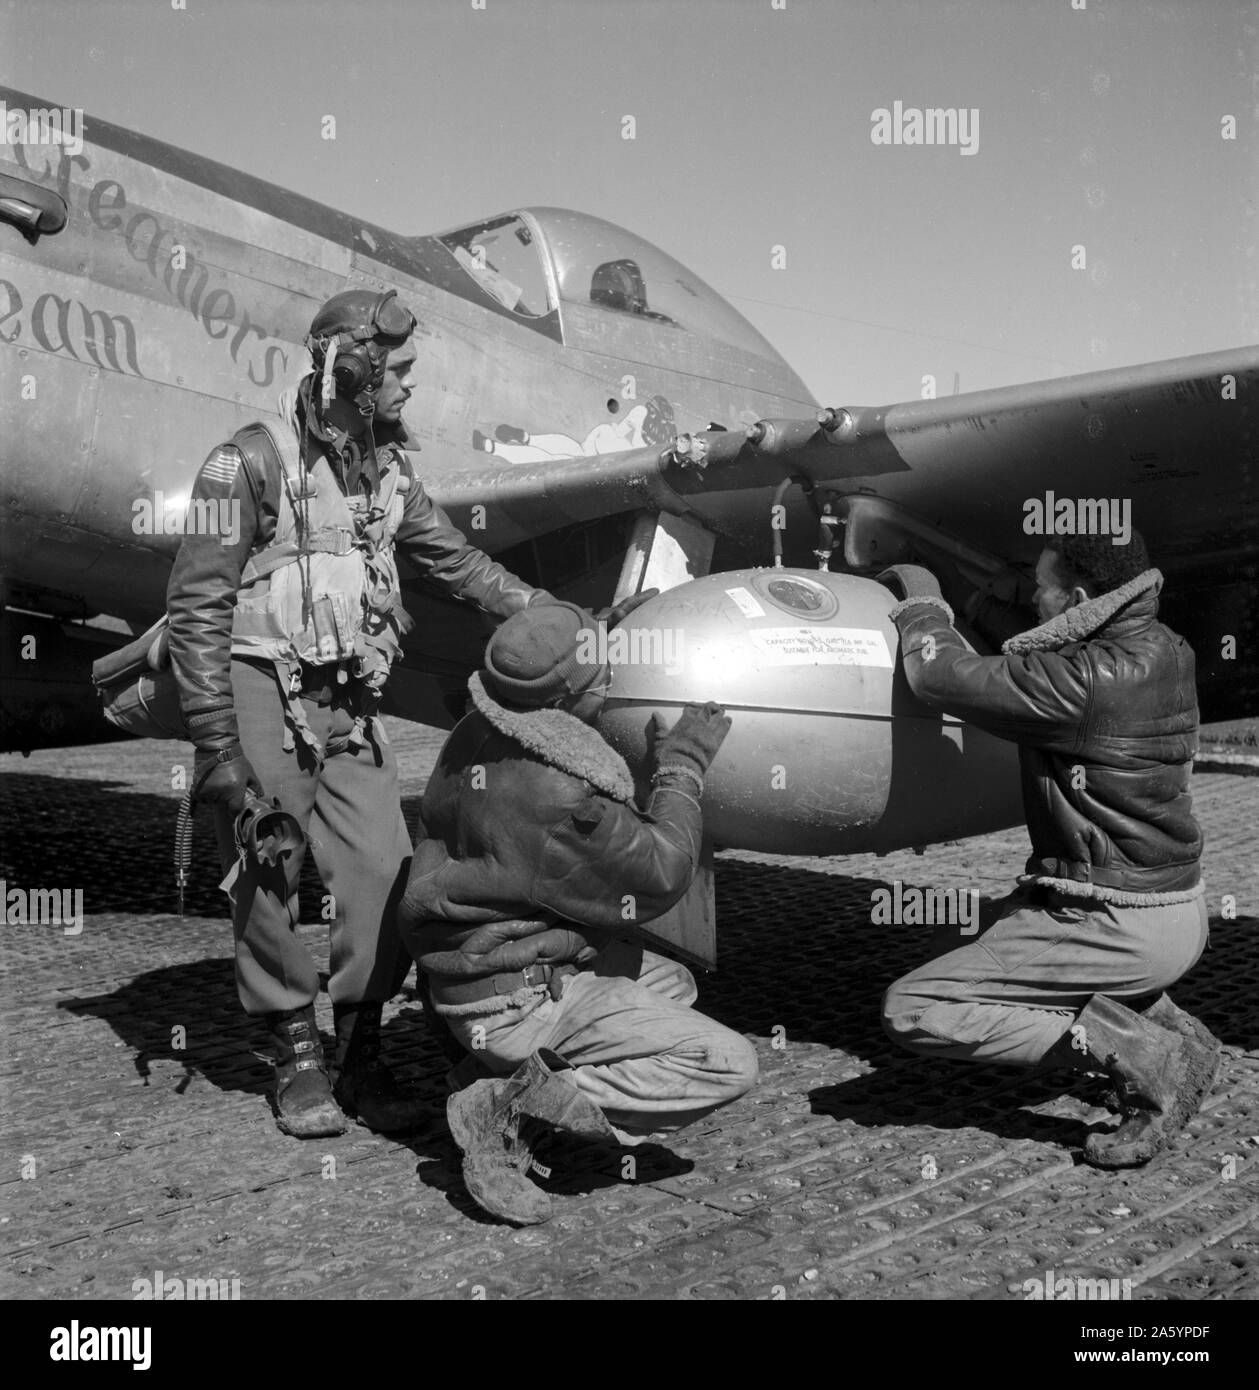 Fotografía de Edward C. Gleed y dos desconocidos Tuskegee airmen, Ramitelli, Italia. Fotografiado por Toni Frissell (1907-1988). Fecha 1945 Foto de stock